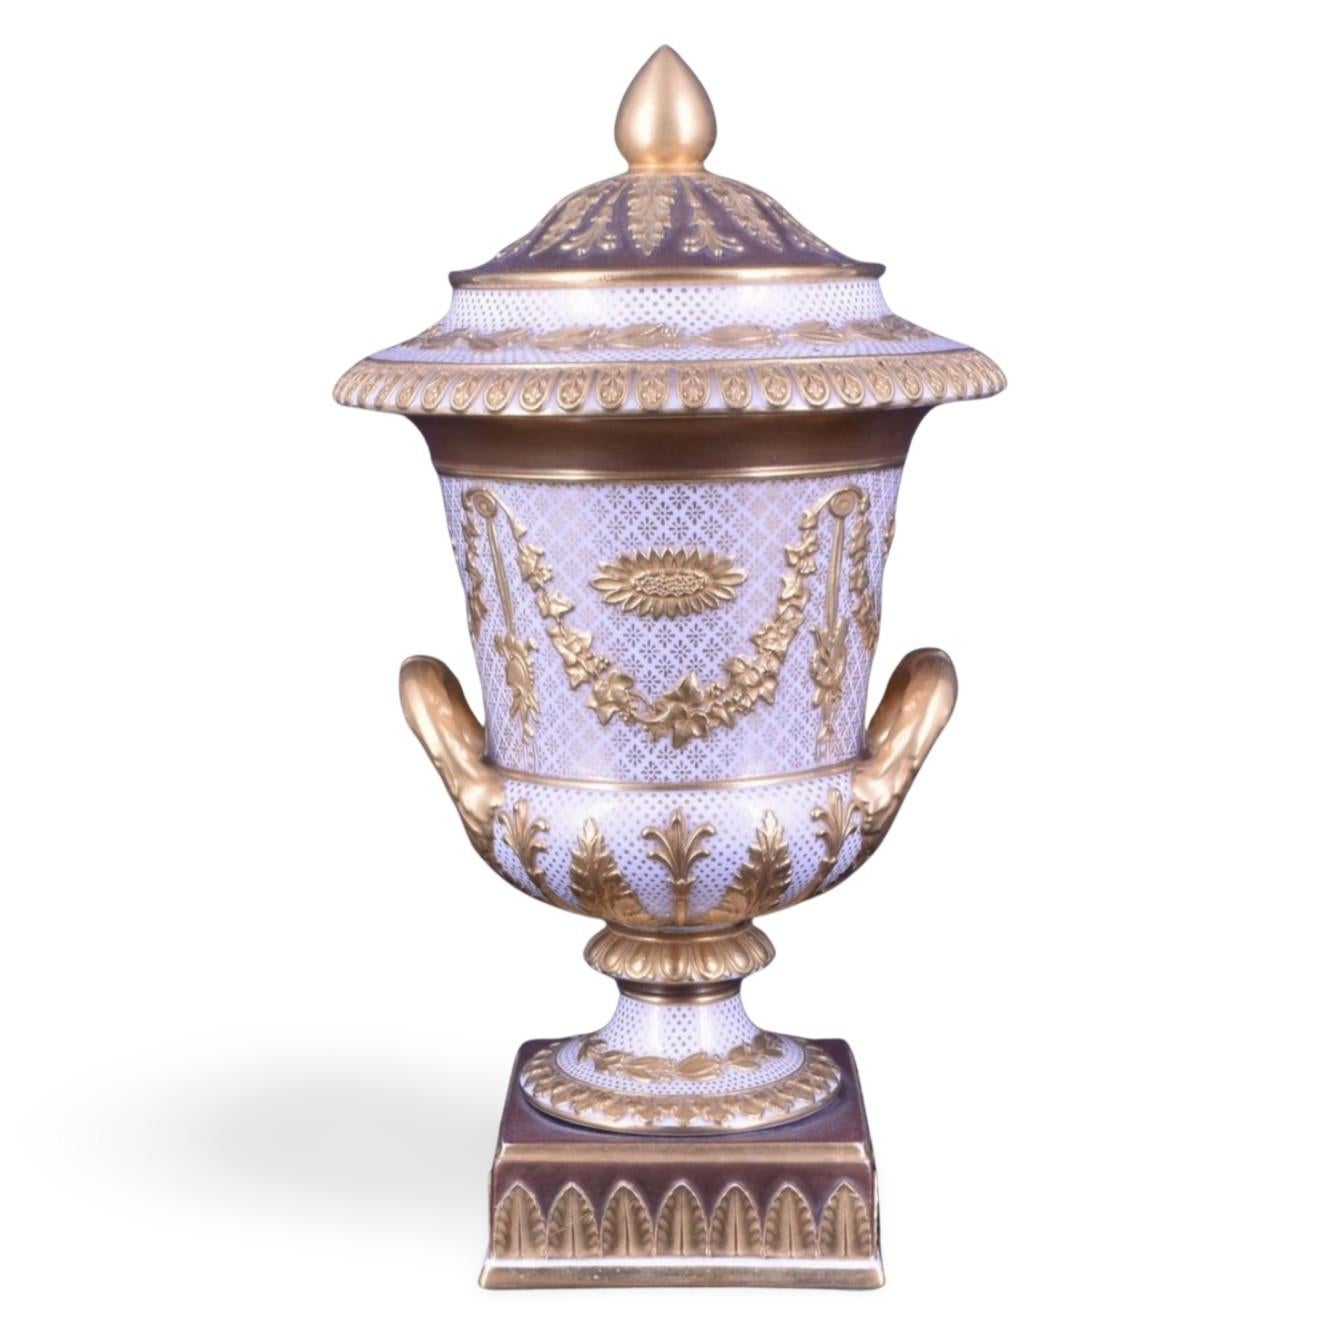 Un vase campana en faïence blanche et dorée de Victoria. Le Victoriaware était un mélange de parian et de creamware, utilisé pour créer ces extraordinaires vases présentant des décorations de style Sèvres sur des formes classiques. Le vase est